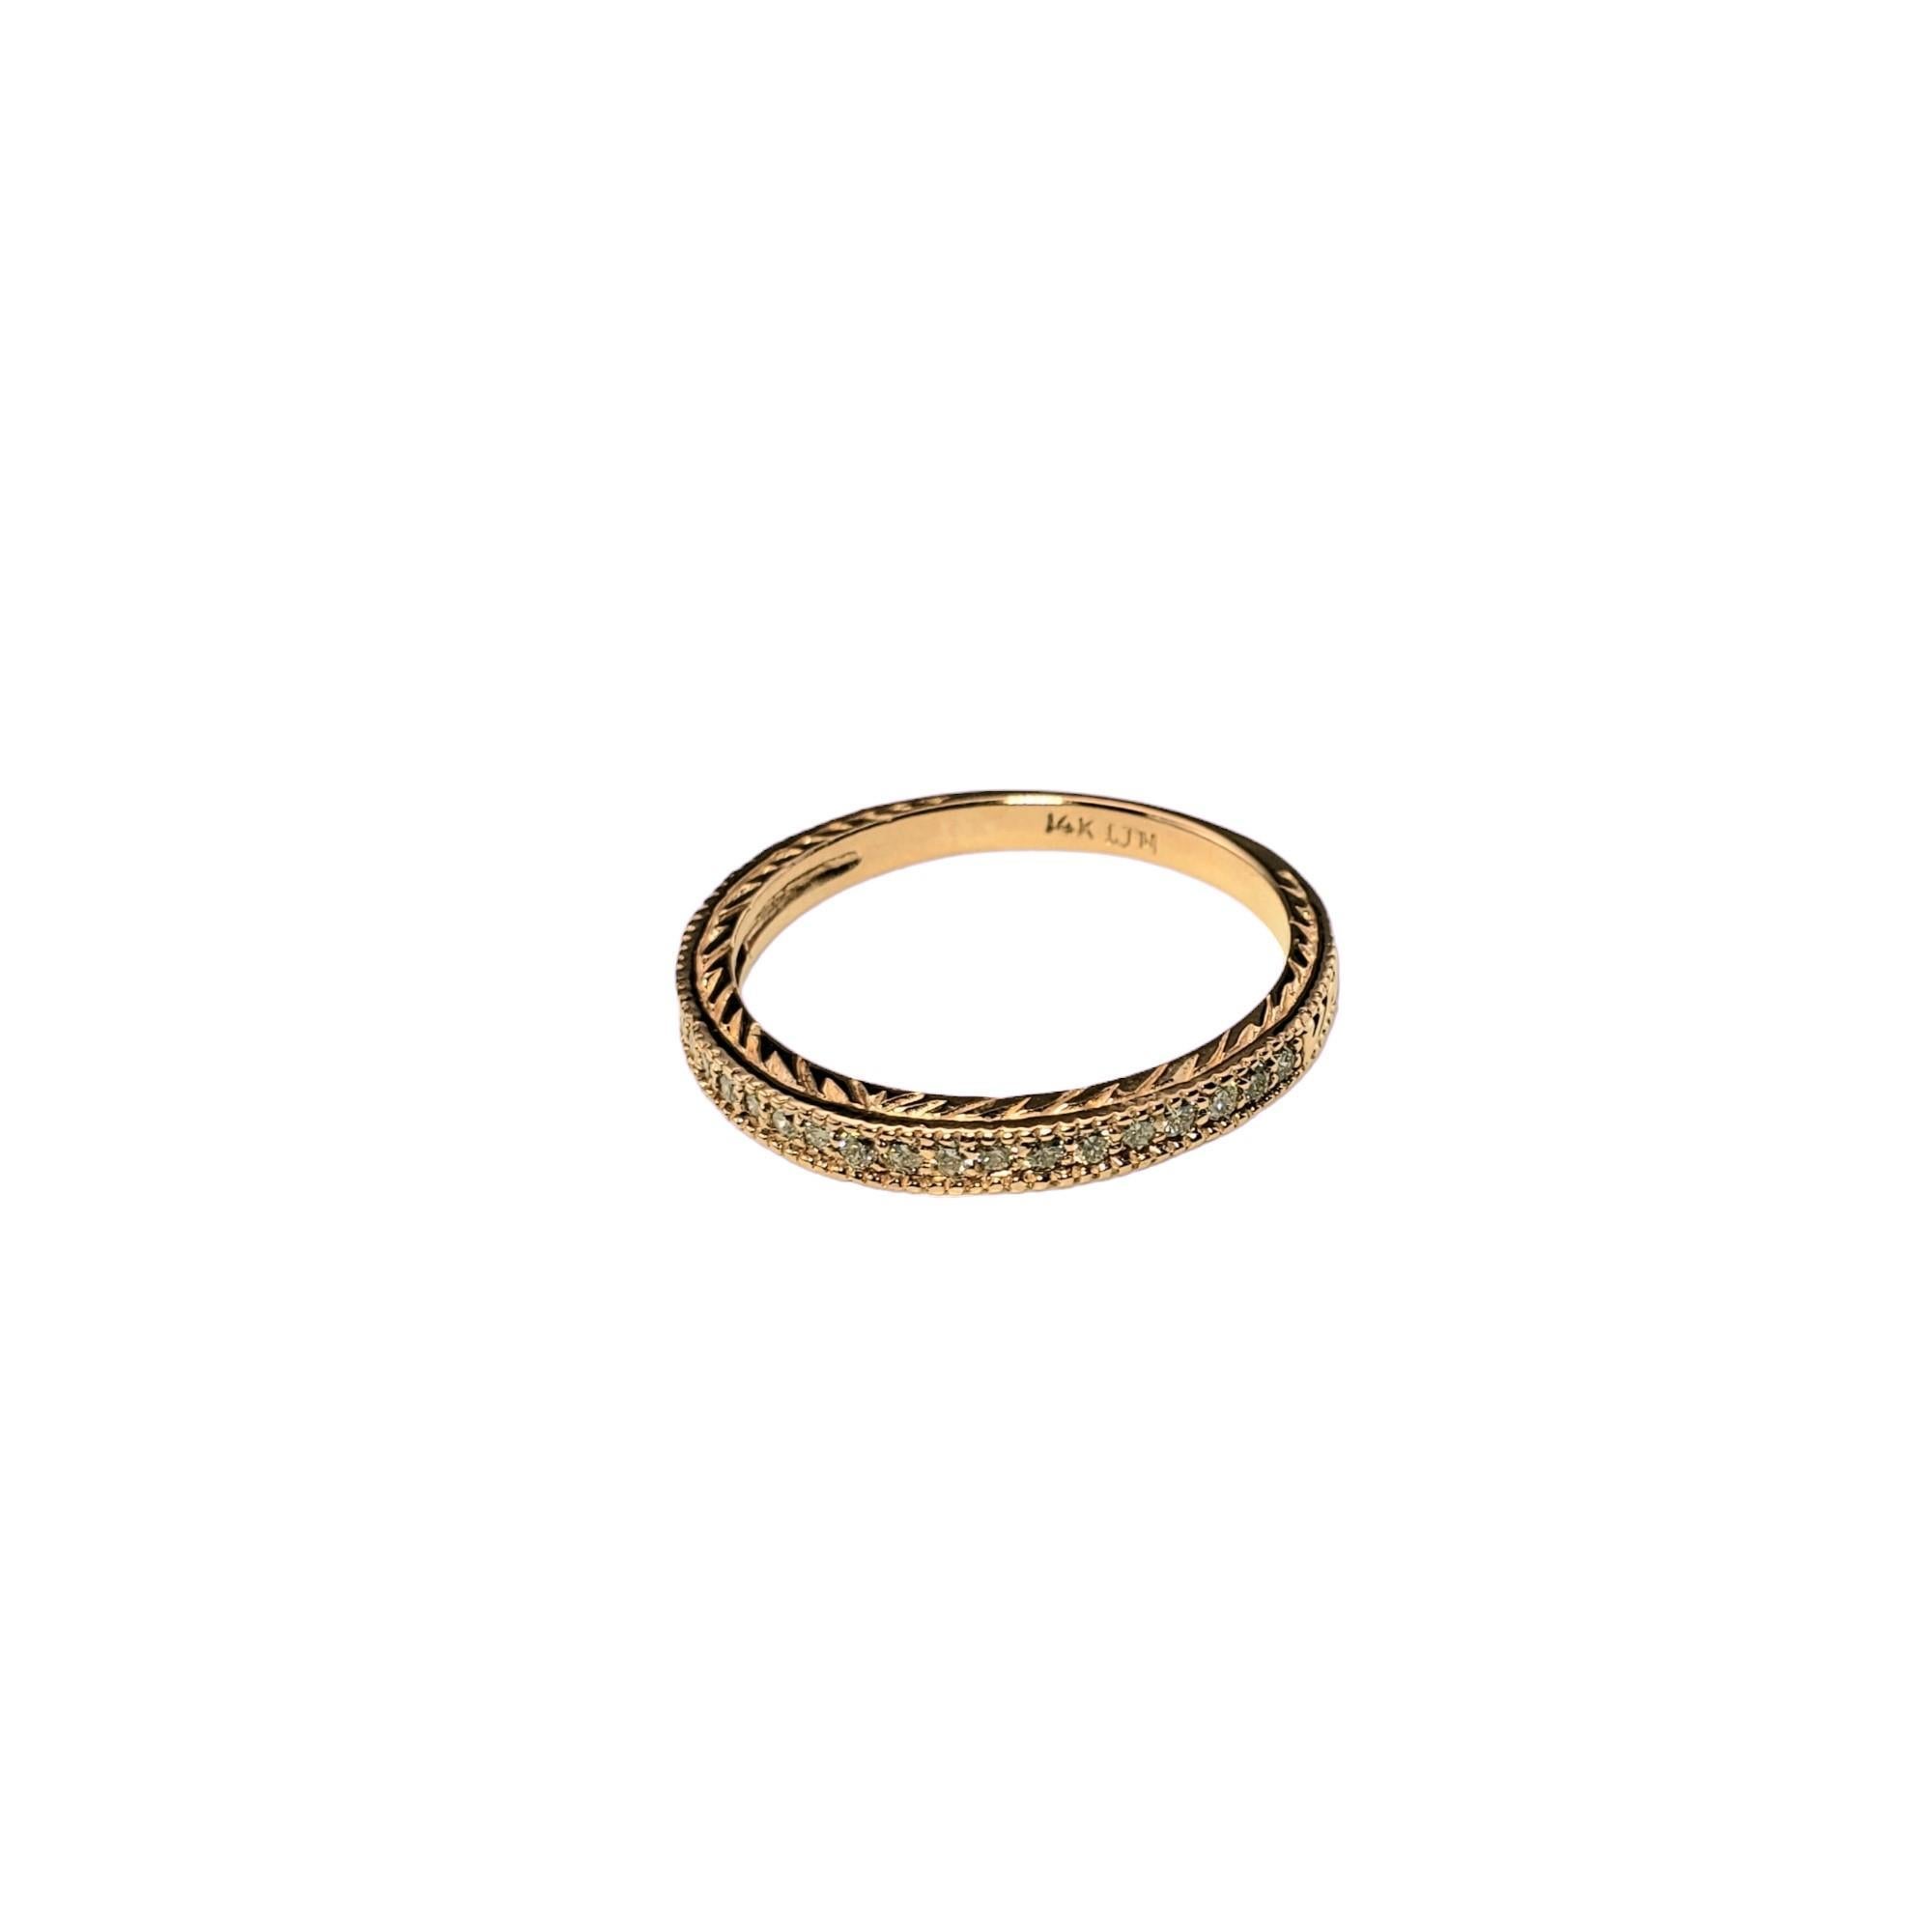 Vintage 14K Rose Gold and Diamond Band Ring Taille 9-

Ce bracelet étincelant est orné de 21 diamants ronds de taille brillante sertis dans de l'or rose 14 carats magnifiquement détaillé.  Largeur : 2 mm.

Poids total approximatif des diamants : 21